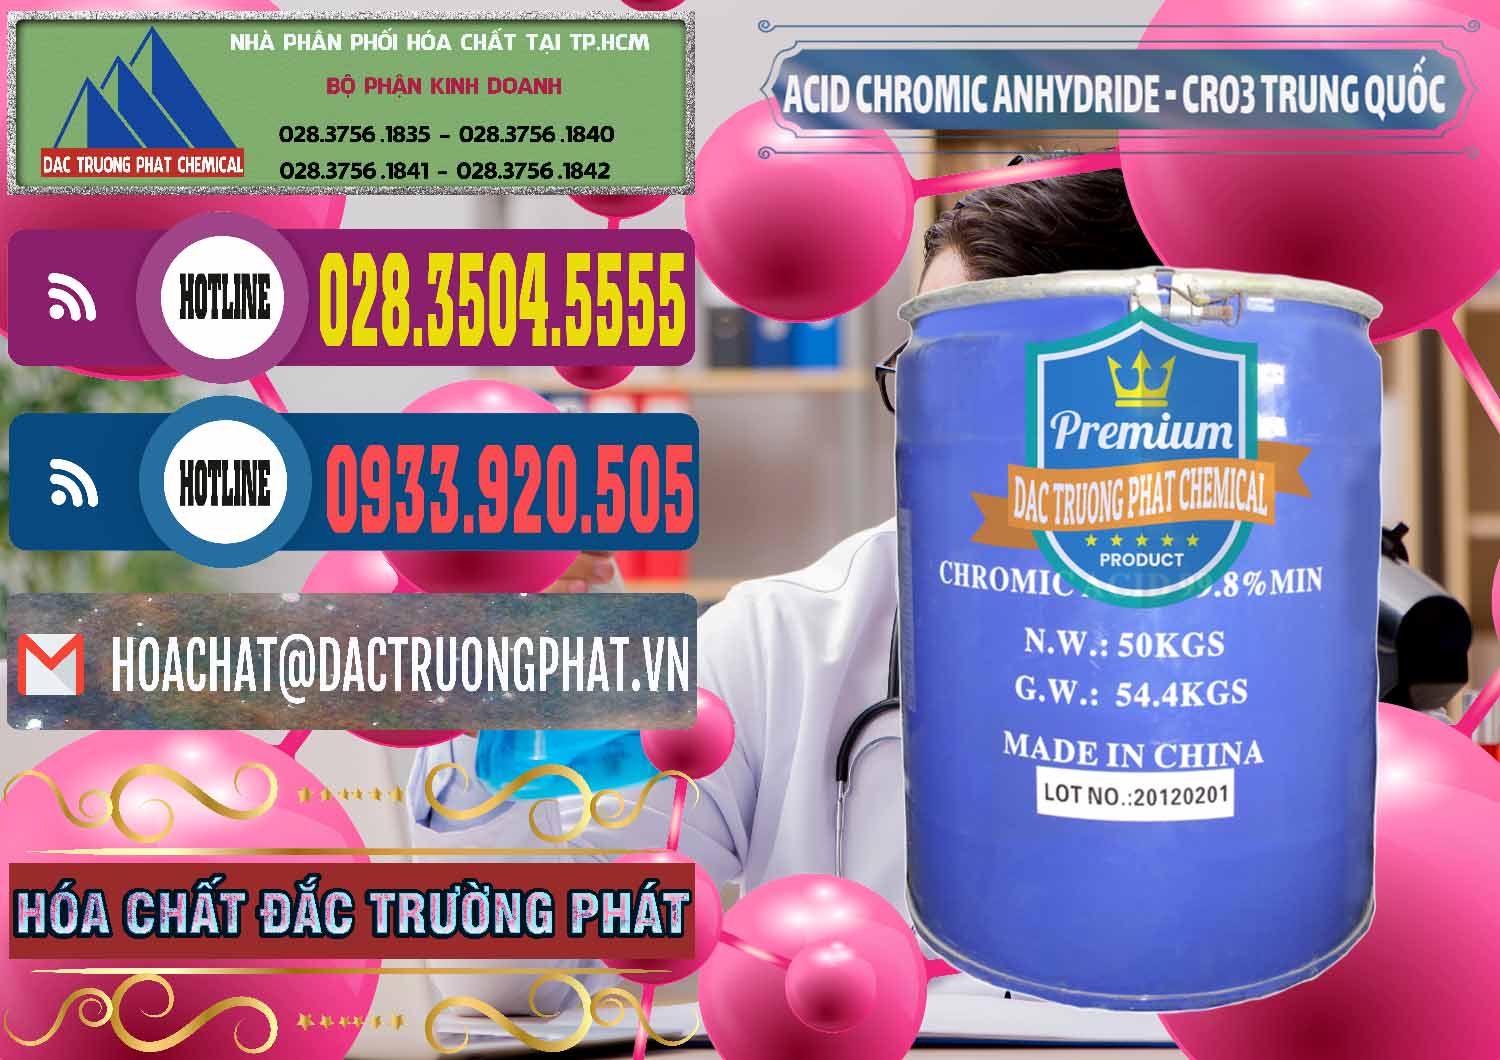 Nơi chuyên kinh doanh & bán Acid Chromic Anhydride - Cromic CRO3 Trung Quốc China - 0007 - Công ty kinh doanh và cung cấp hóa chất tại TP.HCM - muabanhoachat.com.vn